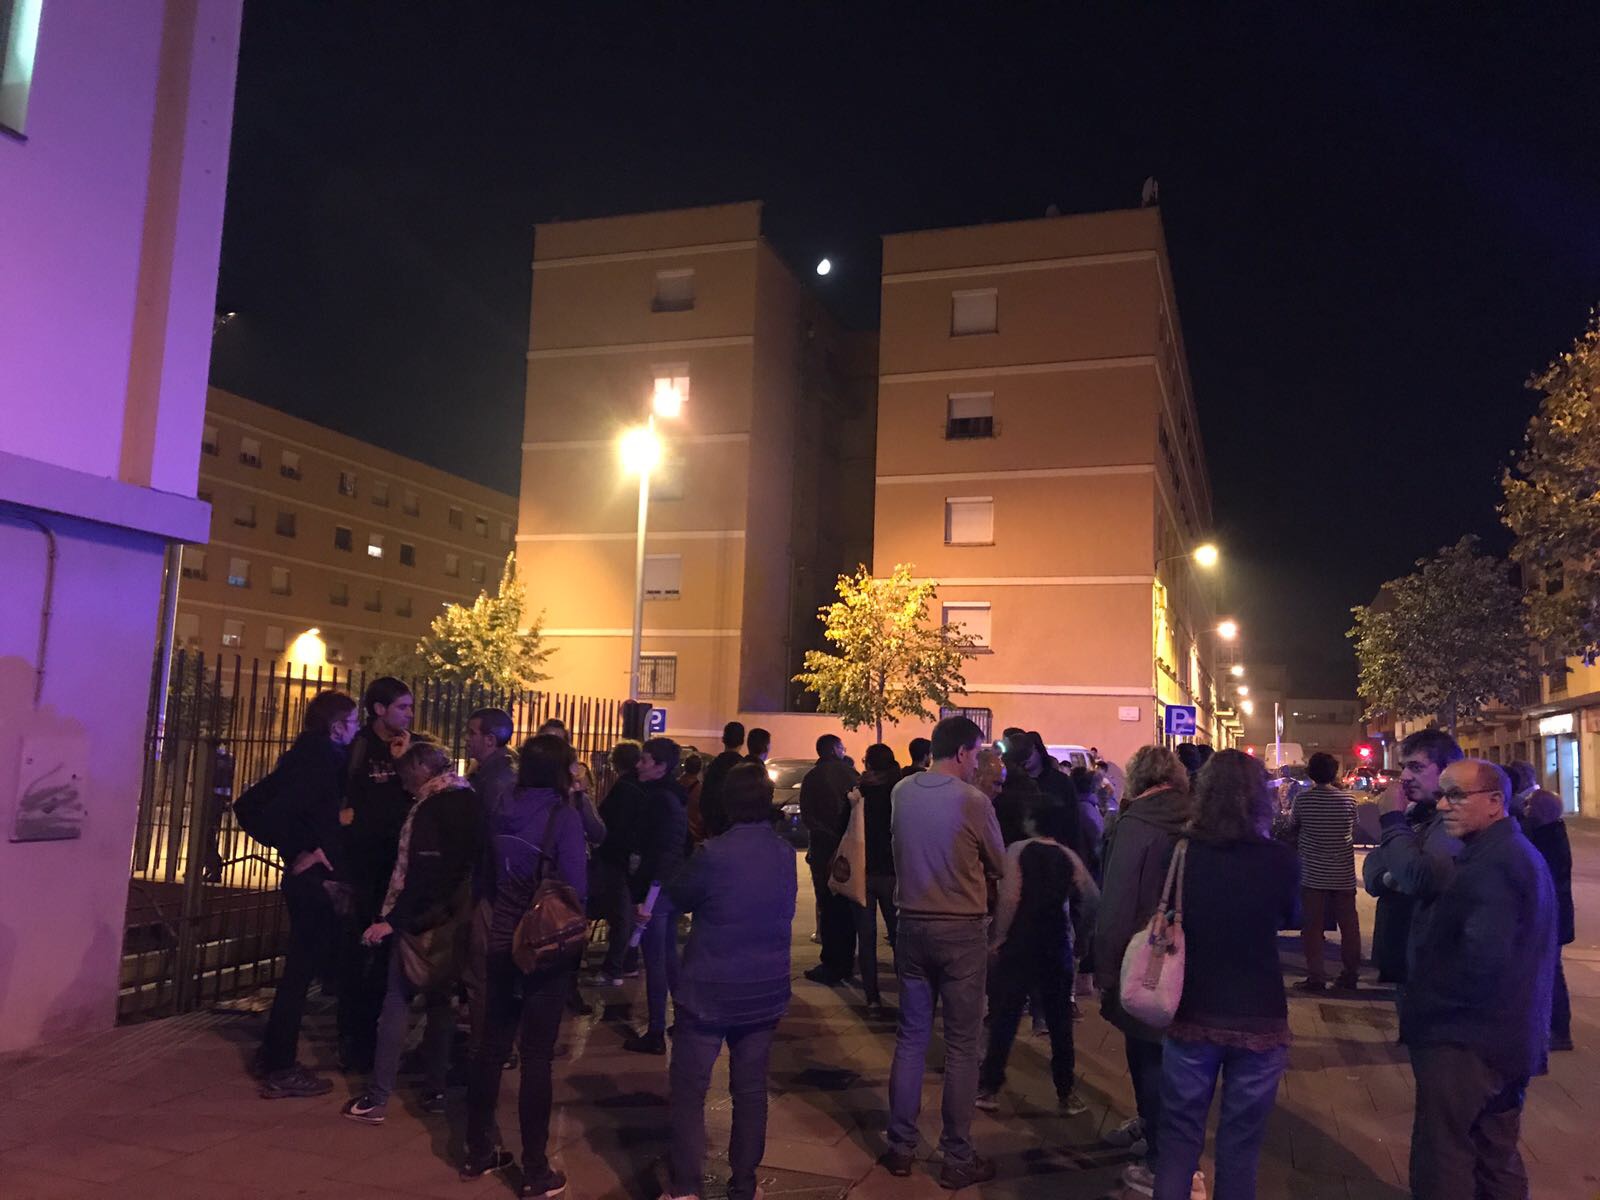 Persones concentrades aquest divendres al vespre davant l'escola Puig-Agut